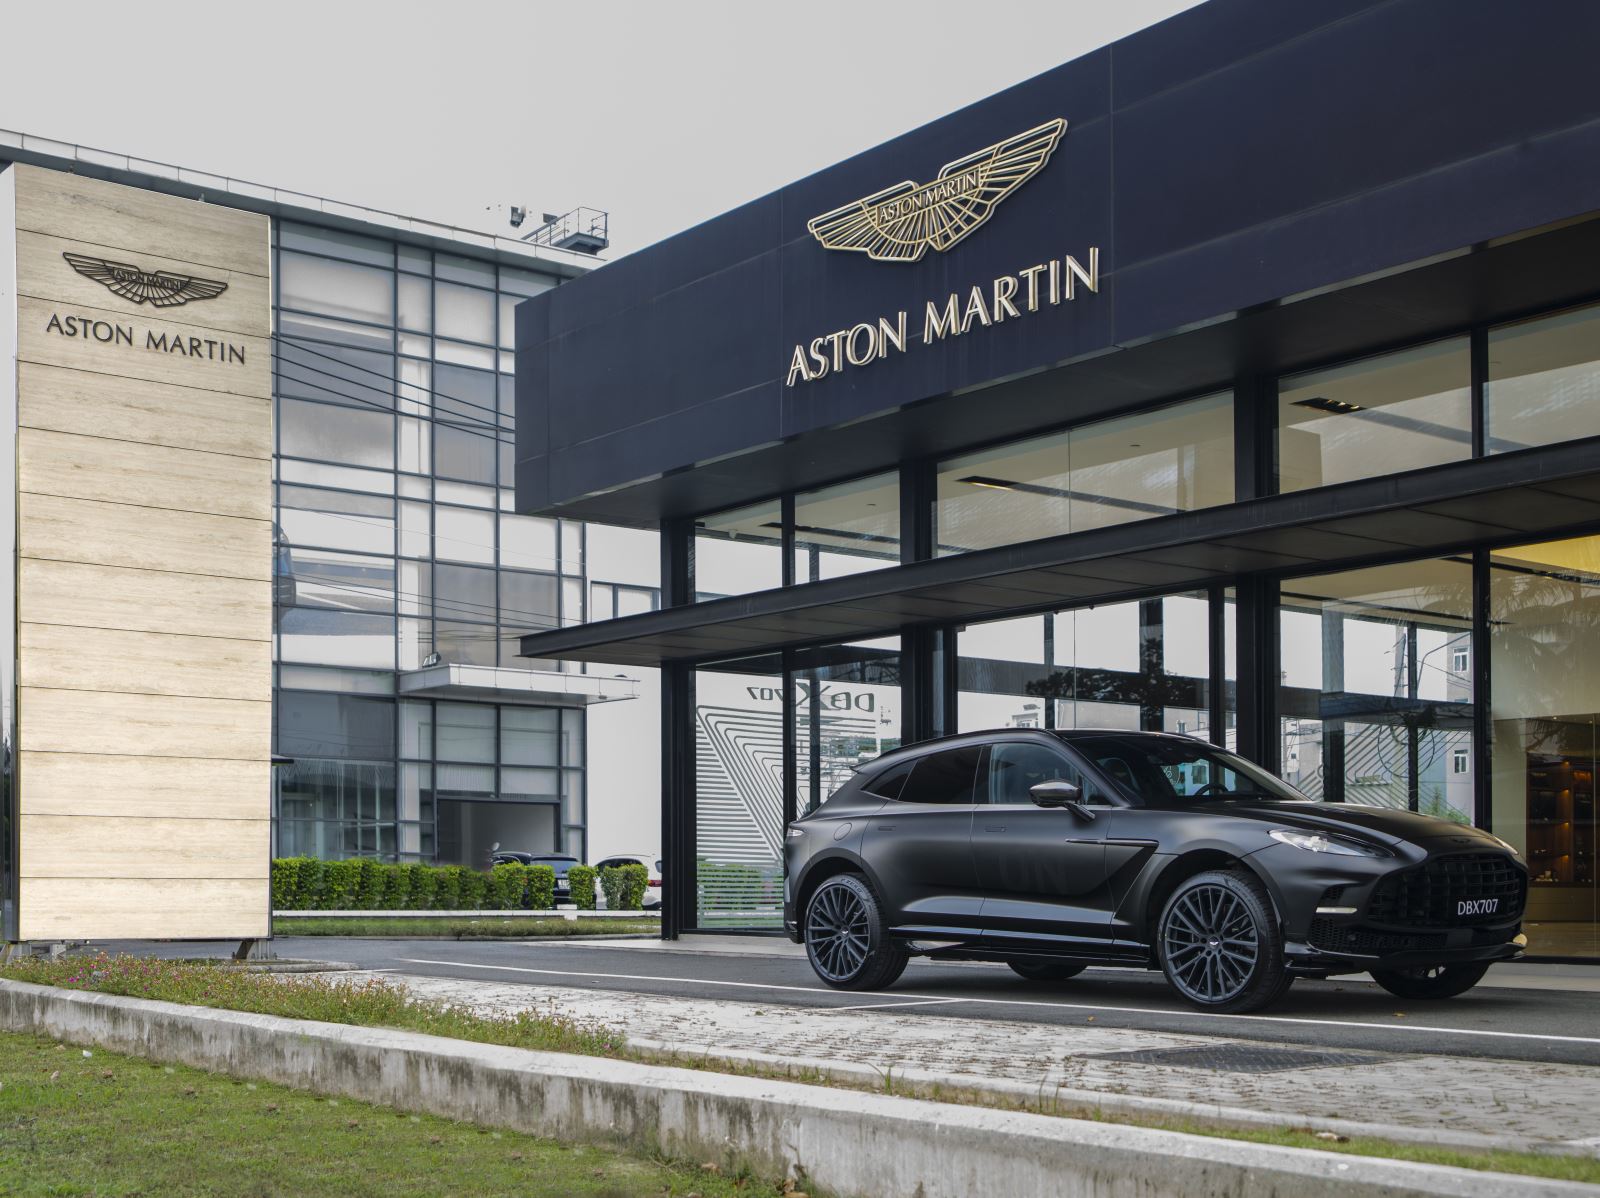 Ra mắt Aston Martin DBX707 tại Việt Nam: Giá từ 21,8 tỷ đồng, ông Đặng Lê Nguyên Vũ là khách hàng đầu tiên - Ảnh 13.